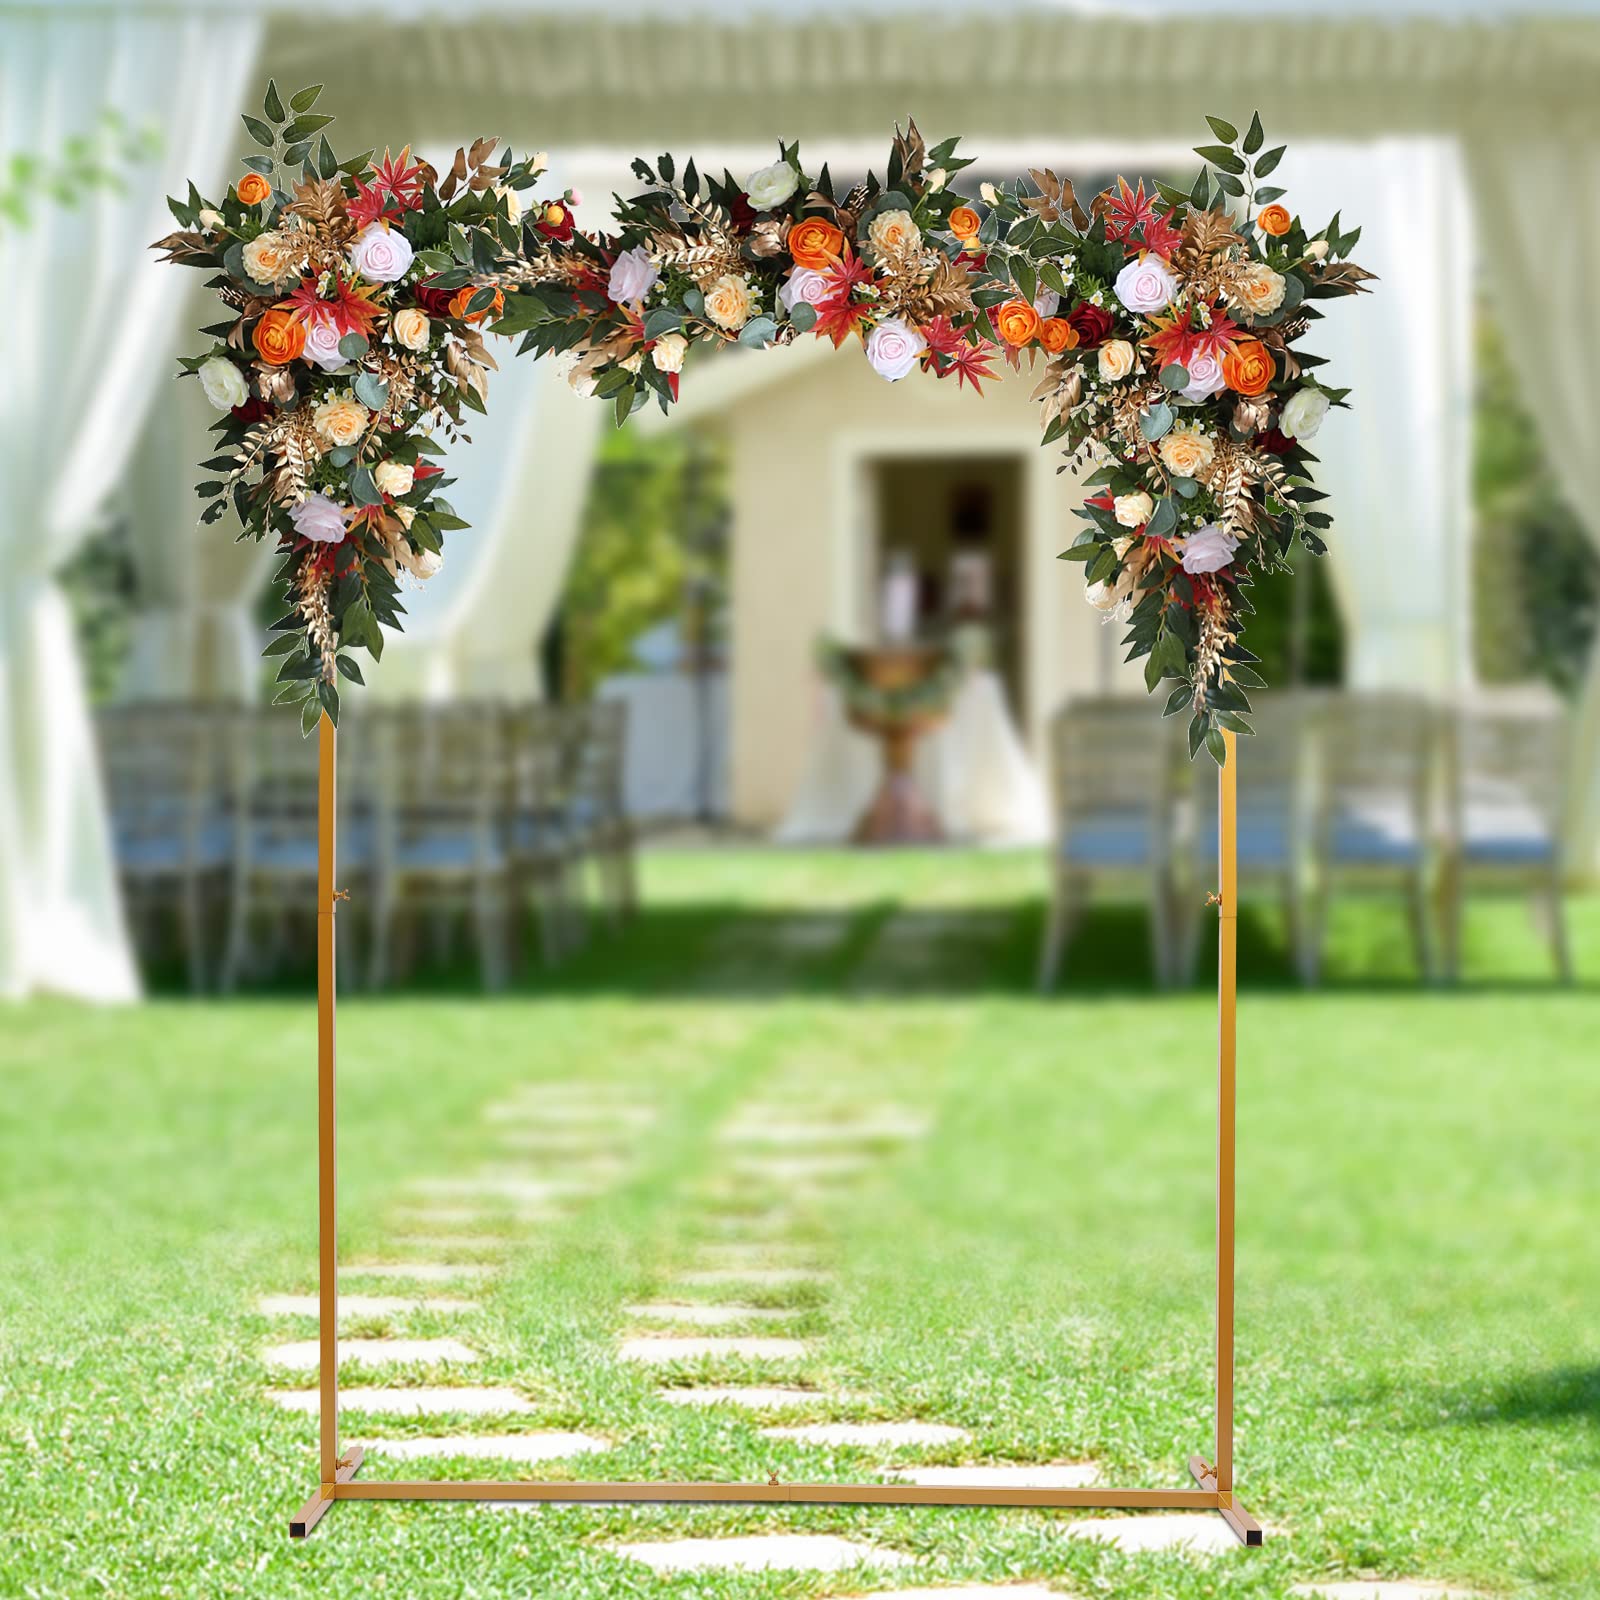 Pour mariage, fête, décoration de jardin